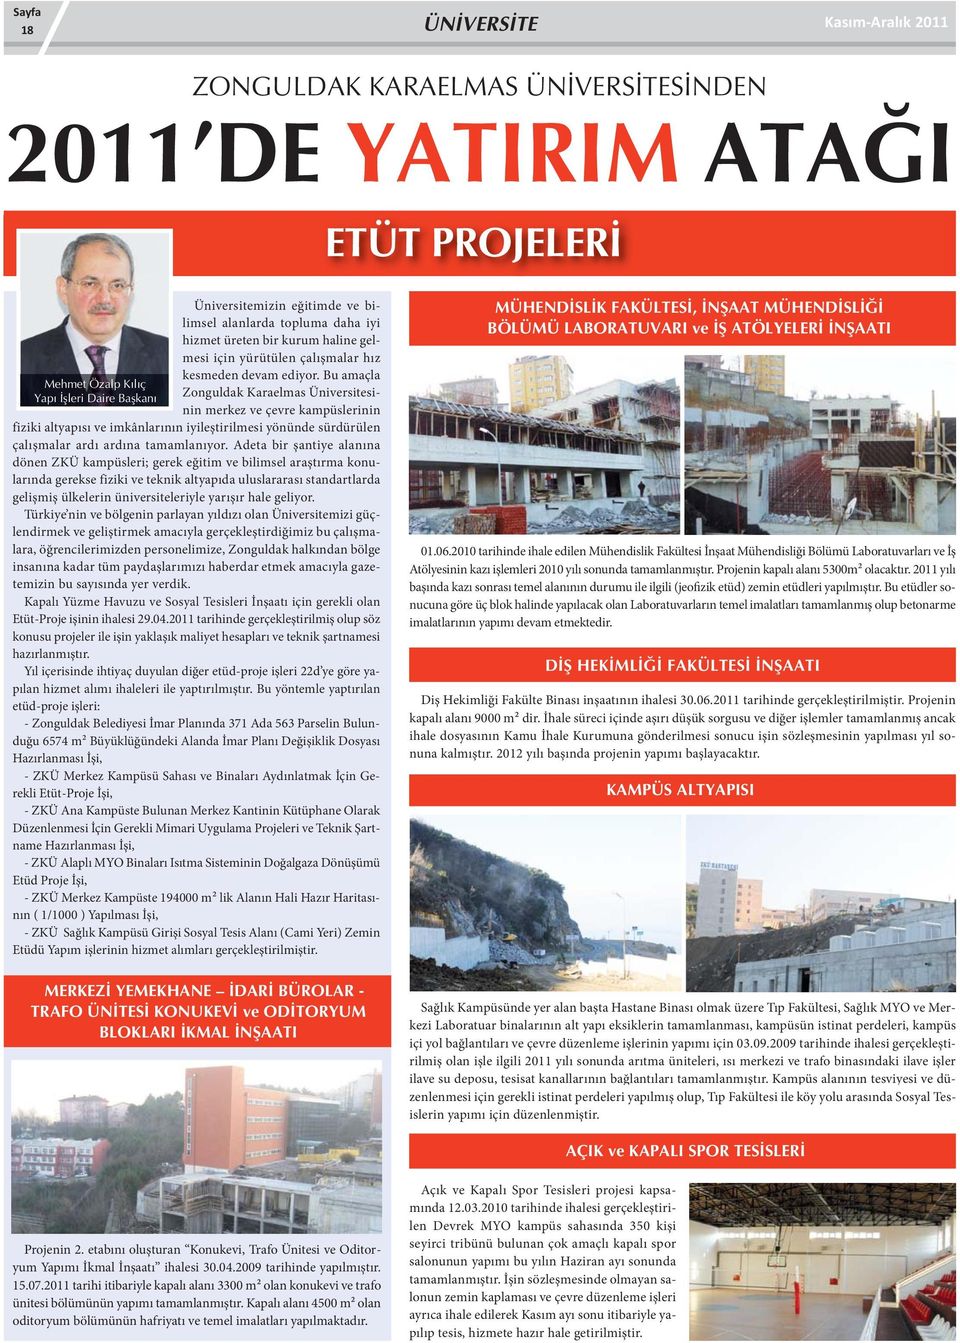 Bu amaçla Zonguldak Karaelmas Üniversitesinin merkez ve çevre kampüslerinin fiziki altyapısı ve imkânlarının iyileştirilmesi yönünde sürdürülen çalışmalar ardı ardına tamamlanıyor.